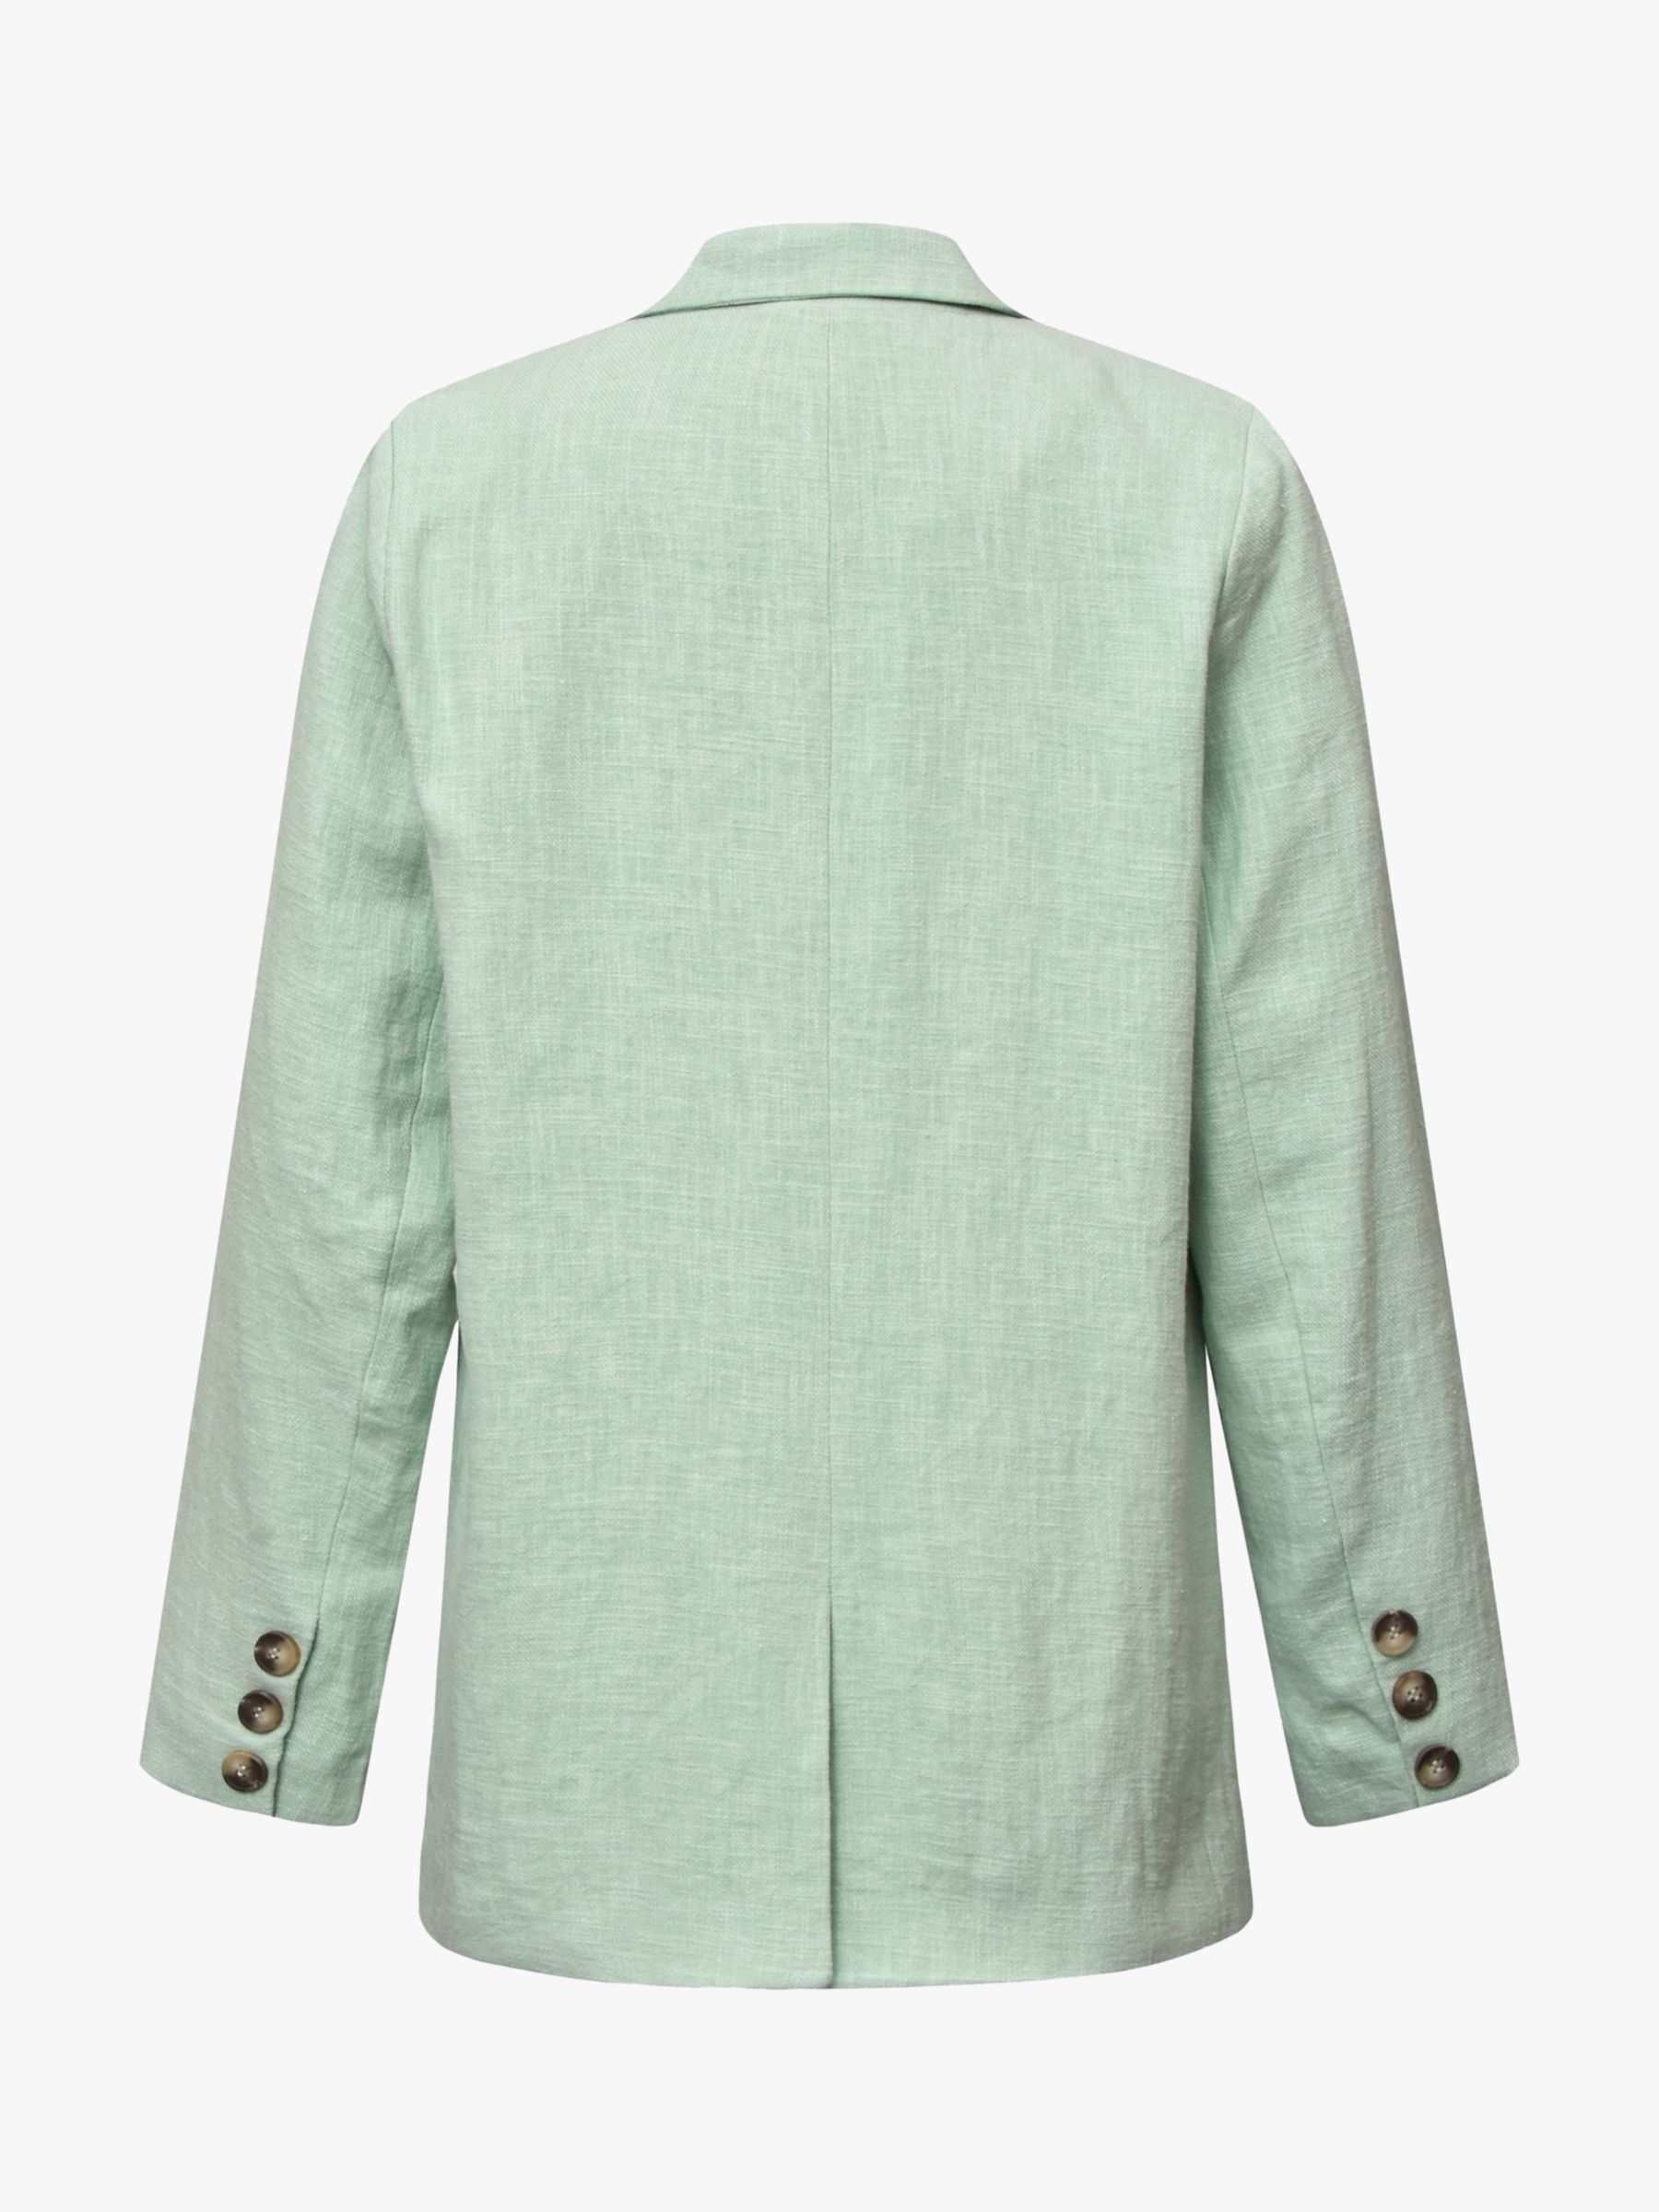 Buy A-VIEW Annali Linen Blend Blazer, Mint Online at johnlewis.com